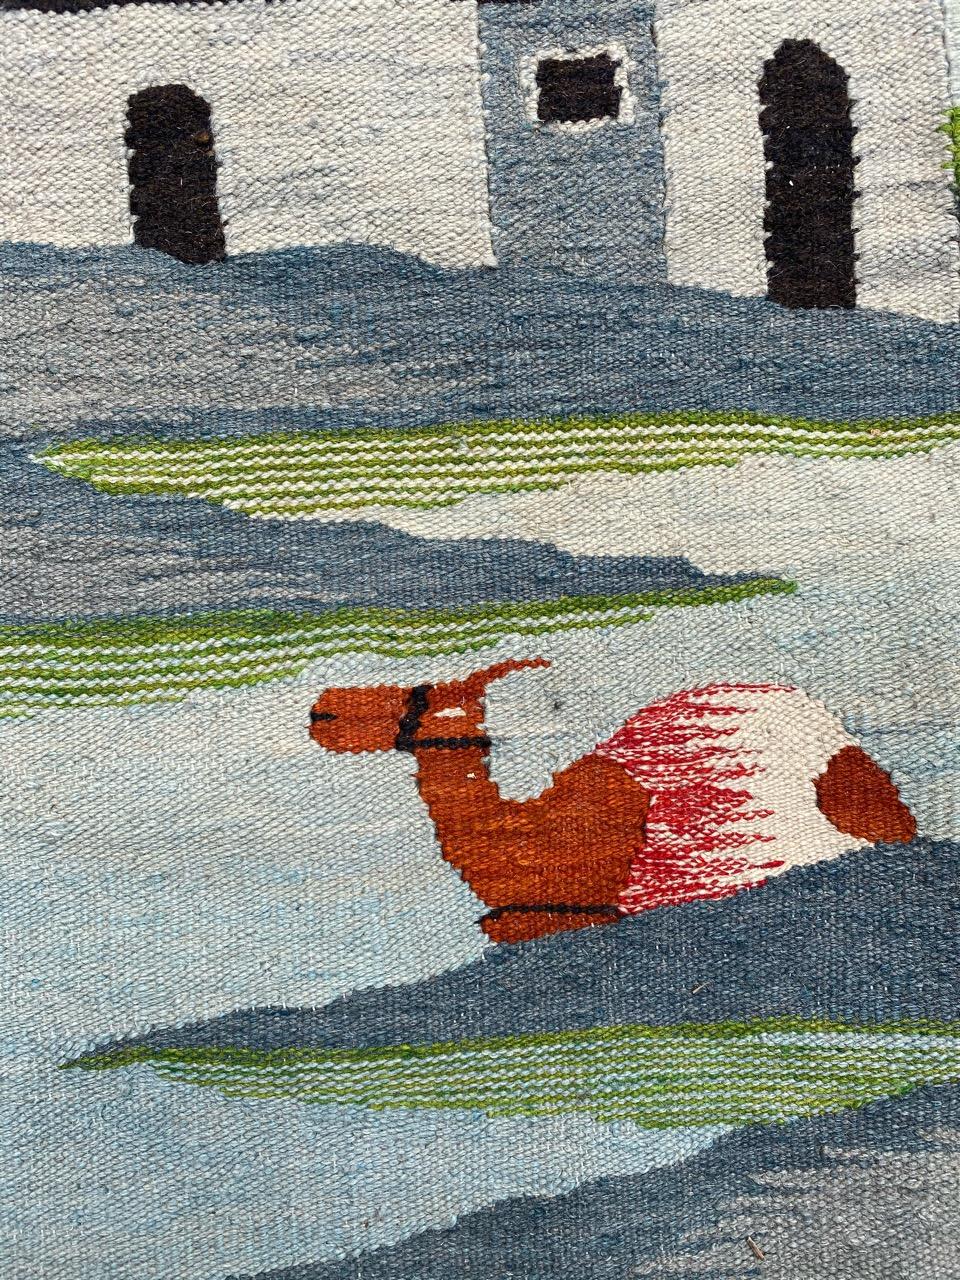 Belle tapisserie tunisienne du milieu du siècle avec un beau design indigène et de belles couleurs, entièrement tissée à la main avec de la laine sur une base de coton.

✨✨✨
